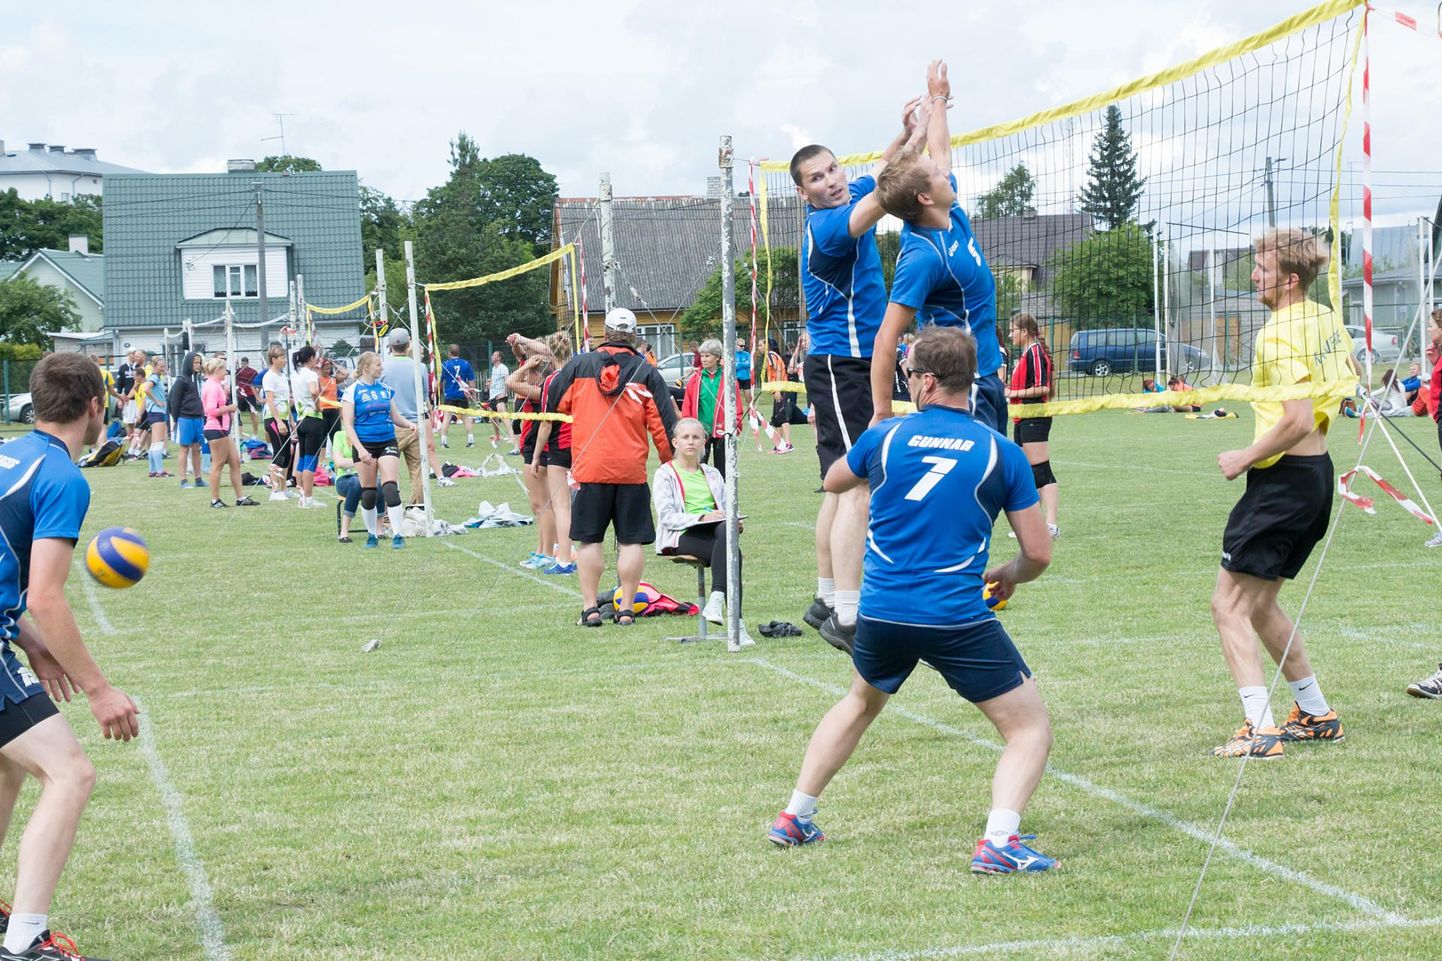 Eestimaa suvemängud liidavad spordirahva ühtseks pereks.